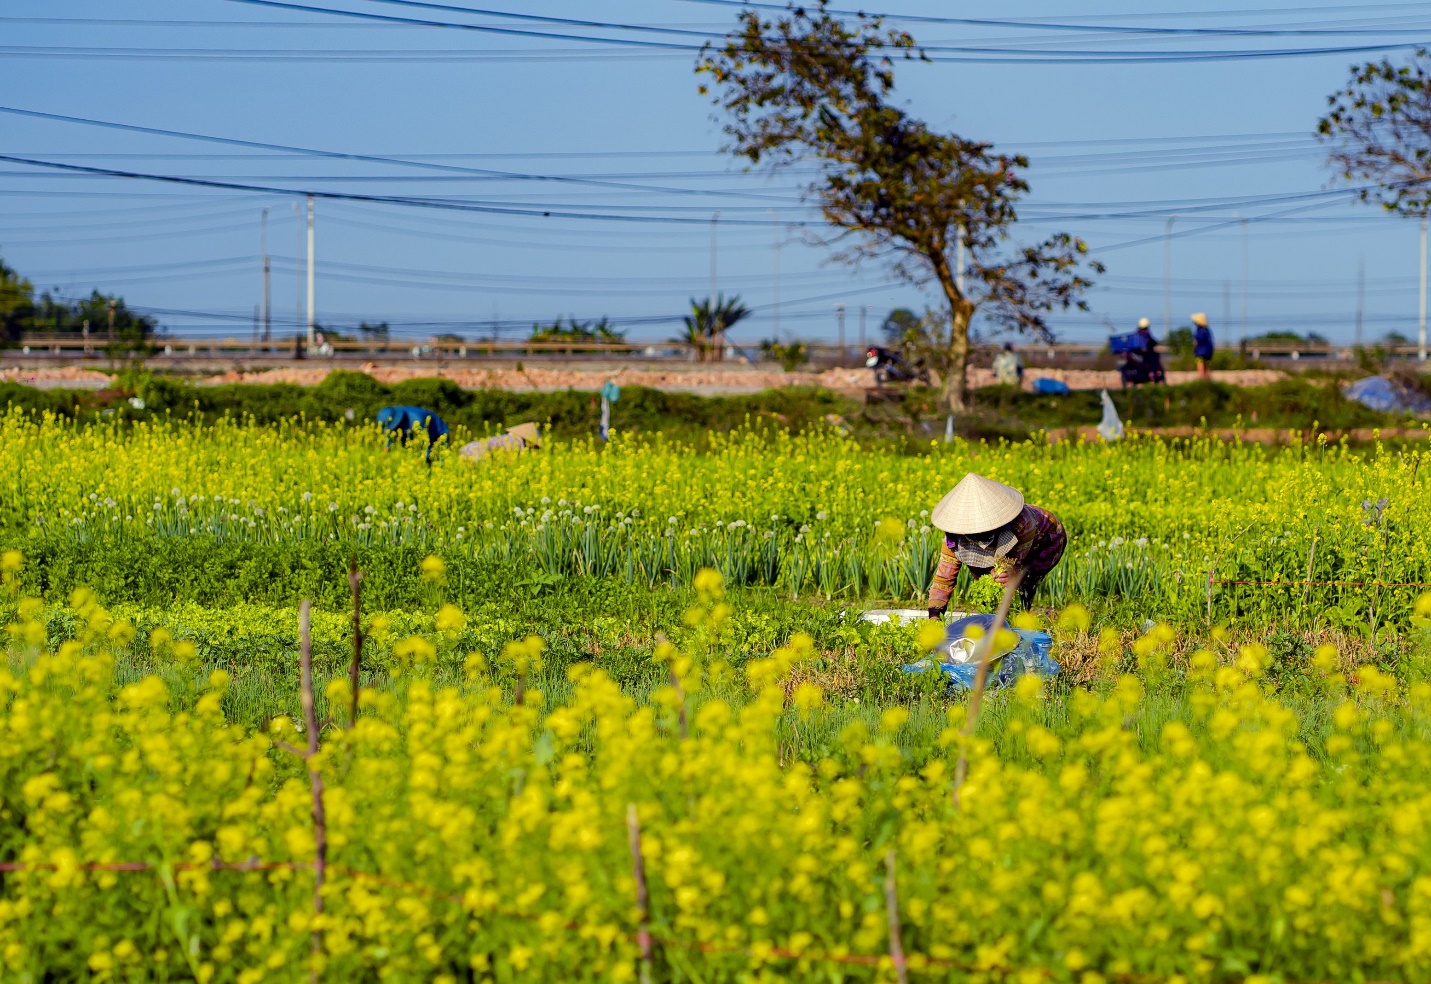 Mùa hoa cải vàng rực ở ngôi làng bình yên xứ Huế - 5